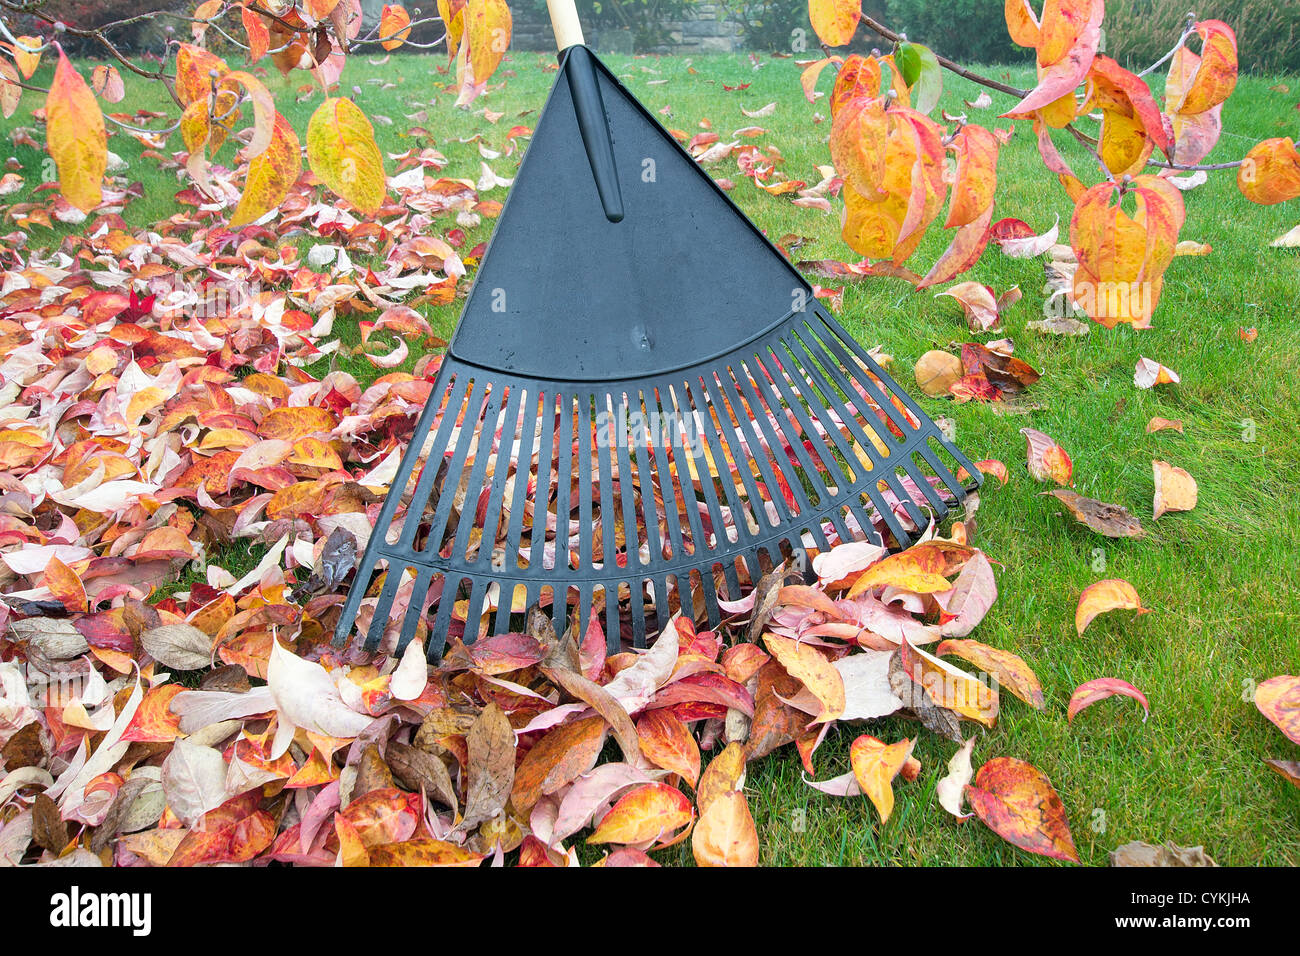 Raking Fall Leaves in Garden in Autumn Season Stock Photo